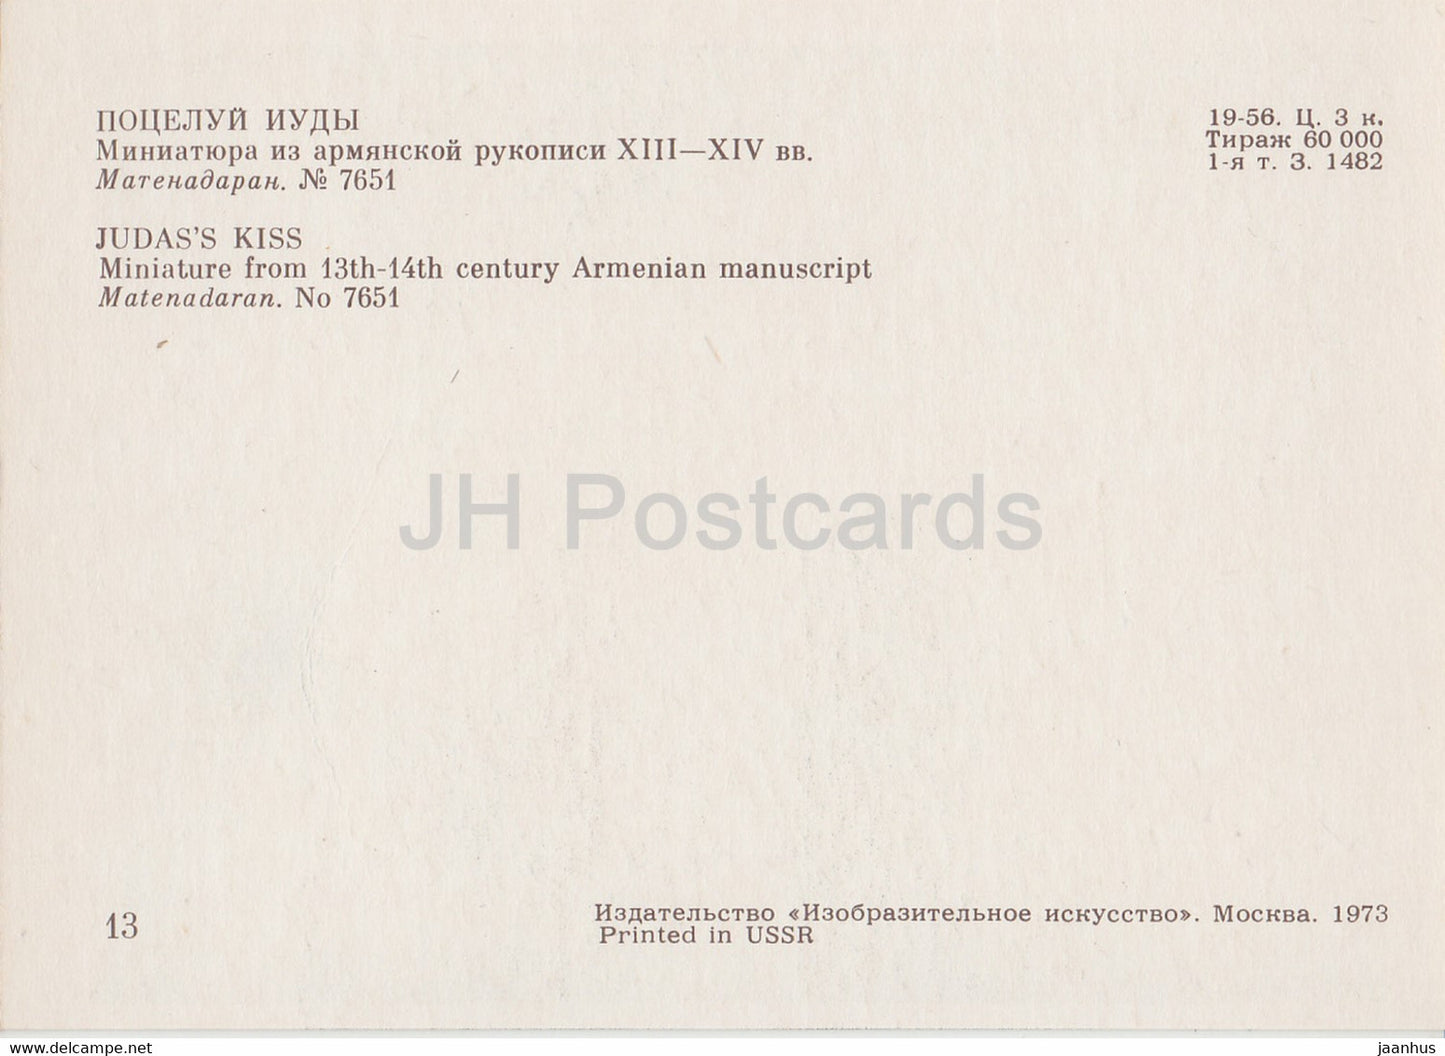 Miniatures dans les manuscrits arméniens - Judas Kiss - Matenadaran - Arménie - 1973 - Russie URSS - inutilisé